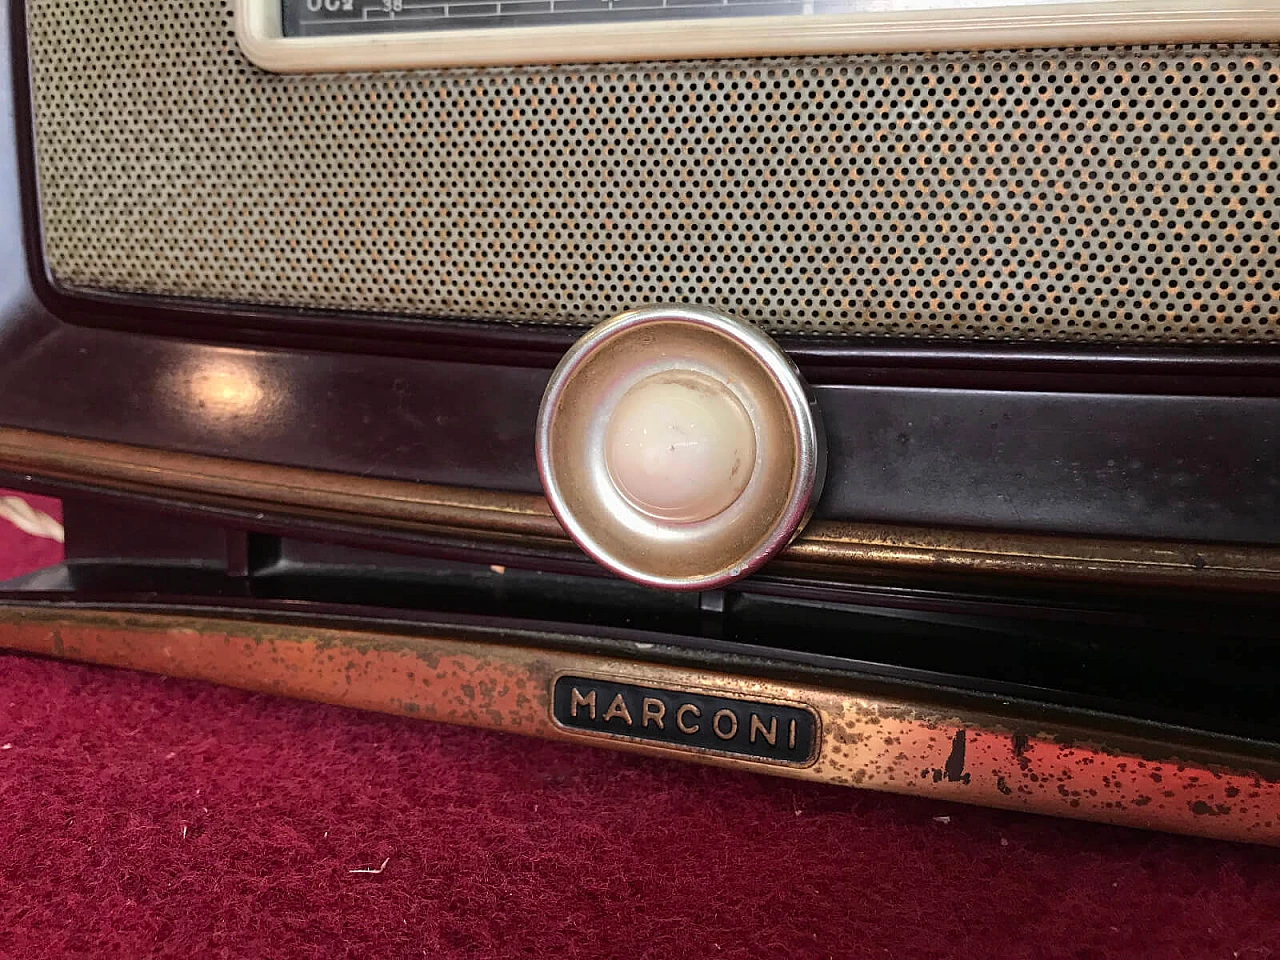 Italian radio "Marconi 1531" of the house La voce del Padrone 5